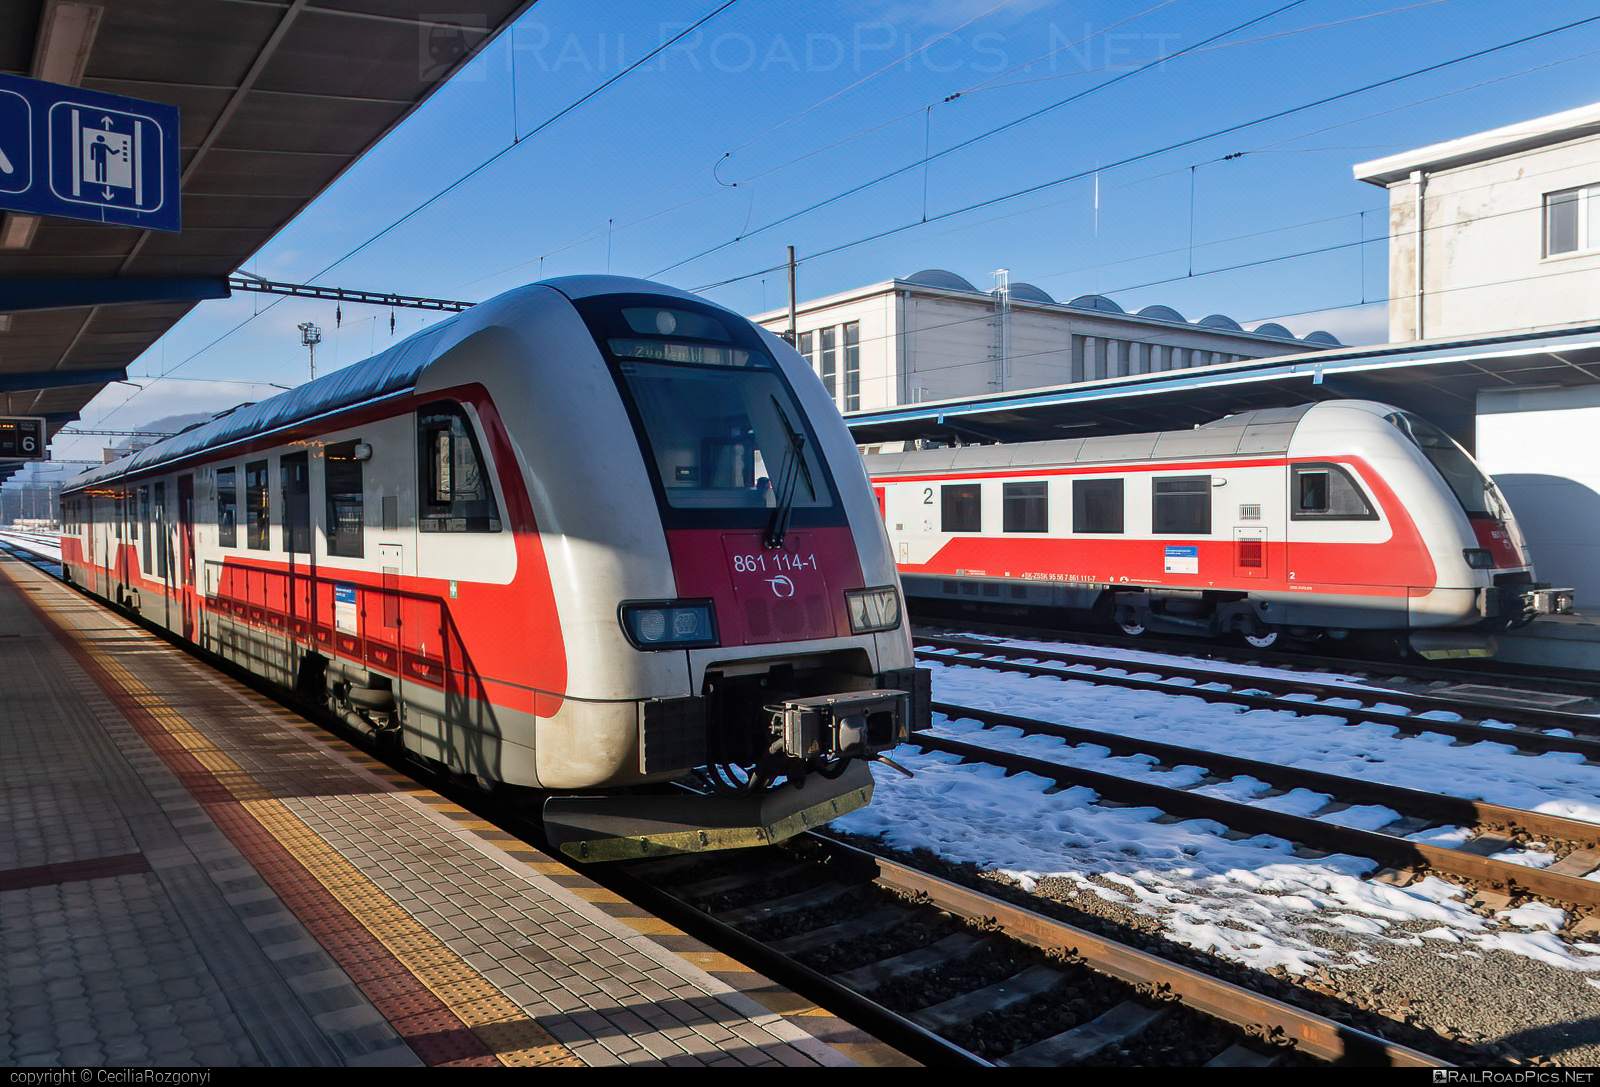 ŽOS Vrútky Class 861.0 - 861 114-1 operated by Železničná Spoločnost' Slovensko, a.s. #ZeleznicnaSpolocnostSlovensko #dunihlav #husenica #zosvrutky #zosvrutky861 #zosvrutky8610 #zssk #zssk861 #zssk8610